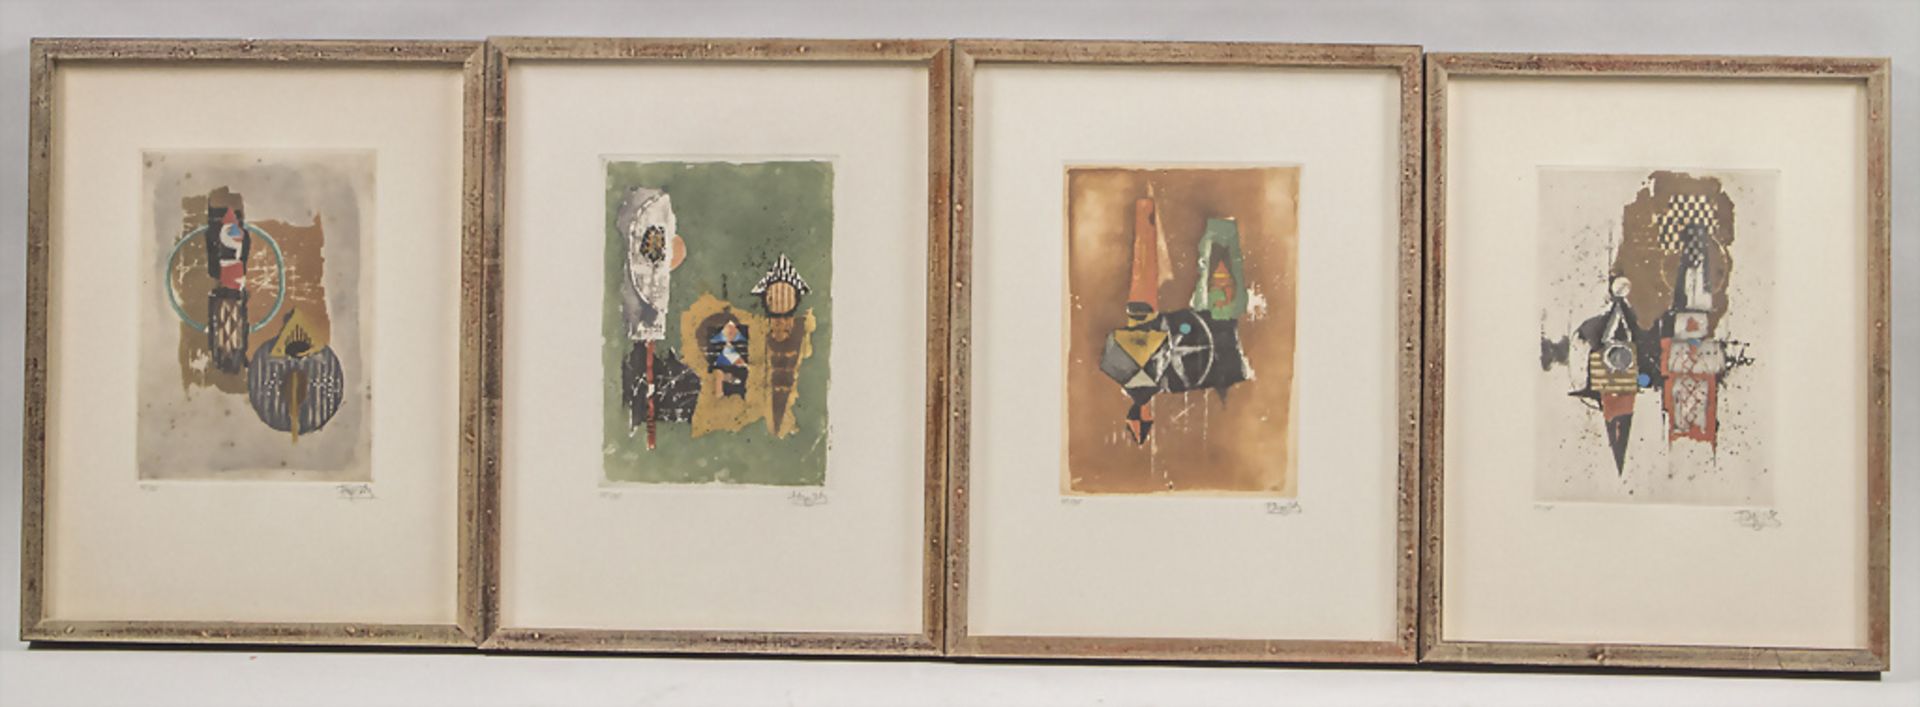 Johnny FRIEDLAENDER (Pless 1912-1992 Paris), 'Etudes II', Galerie Schmücking, 1983